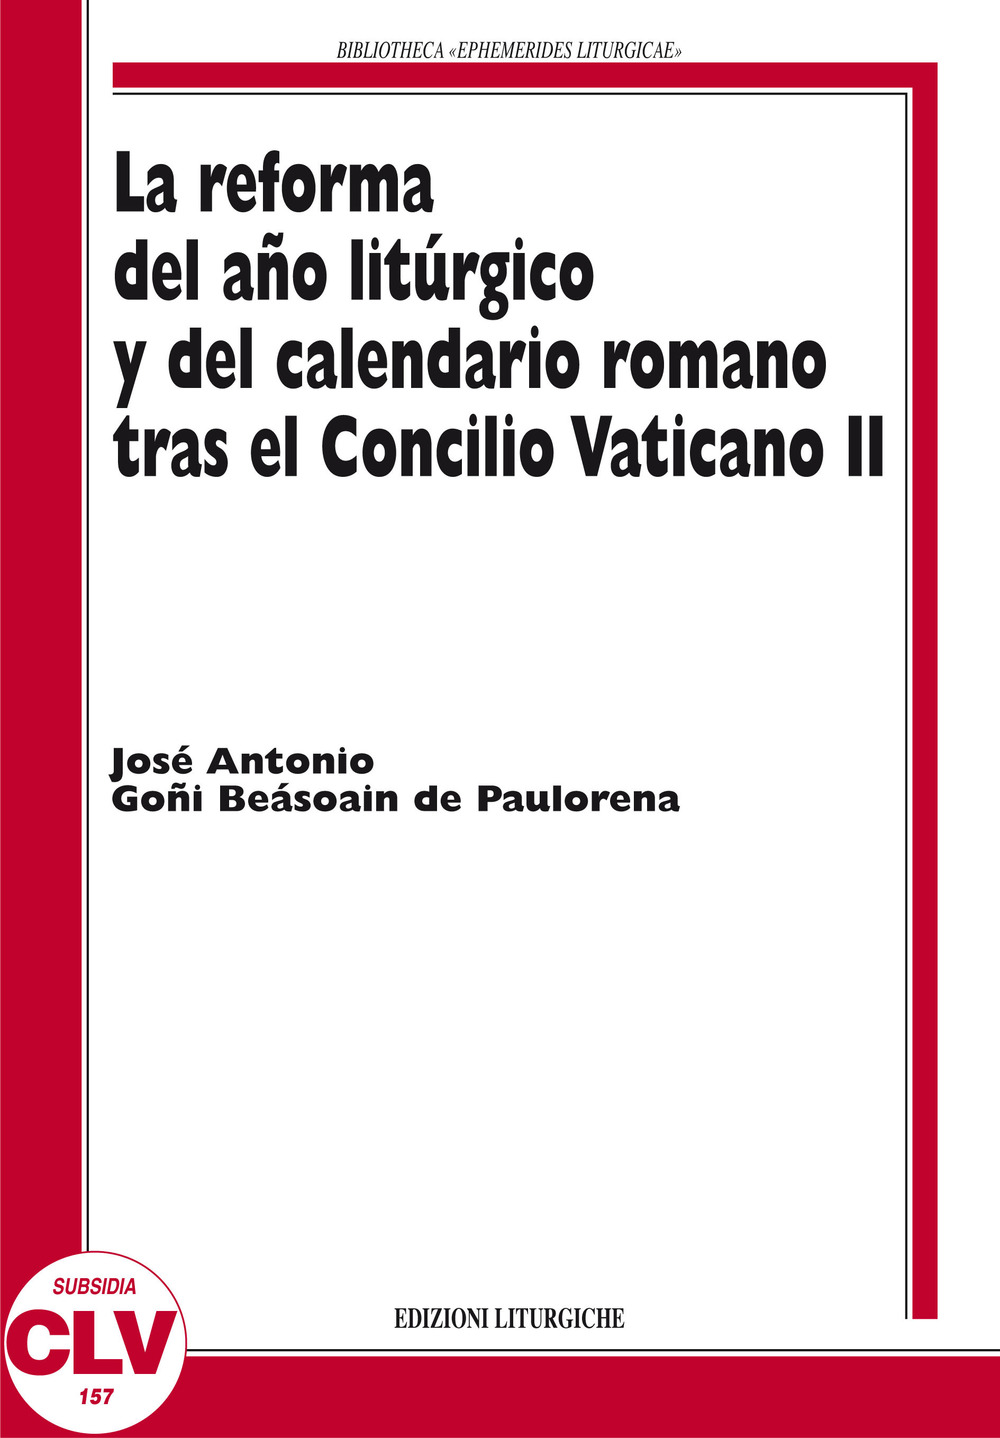 La reforma del ano liturgico y del calendario romano tras el Concilio Vaticano II